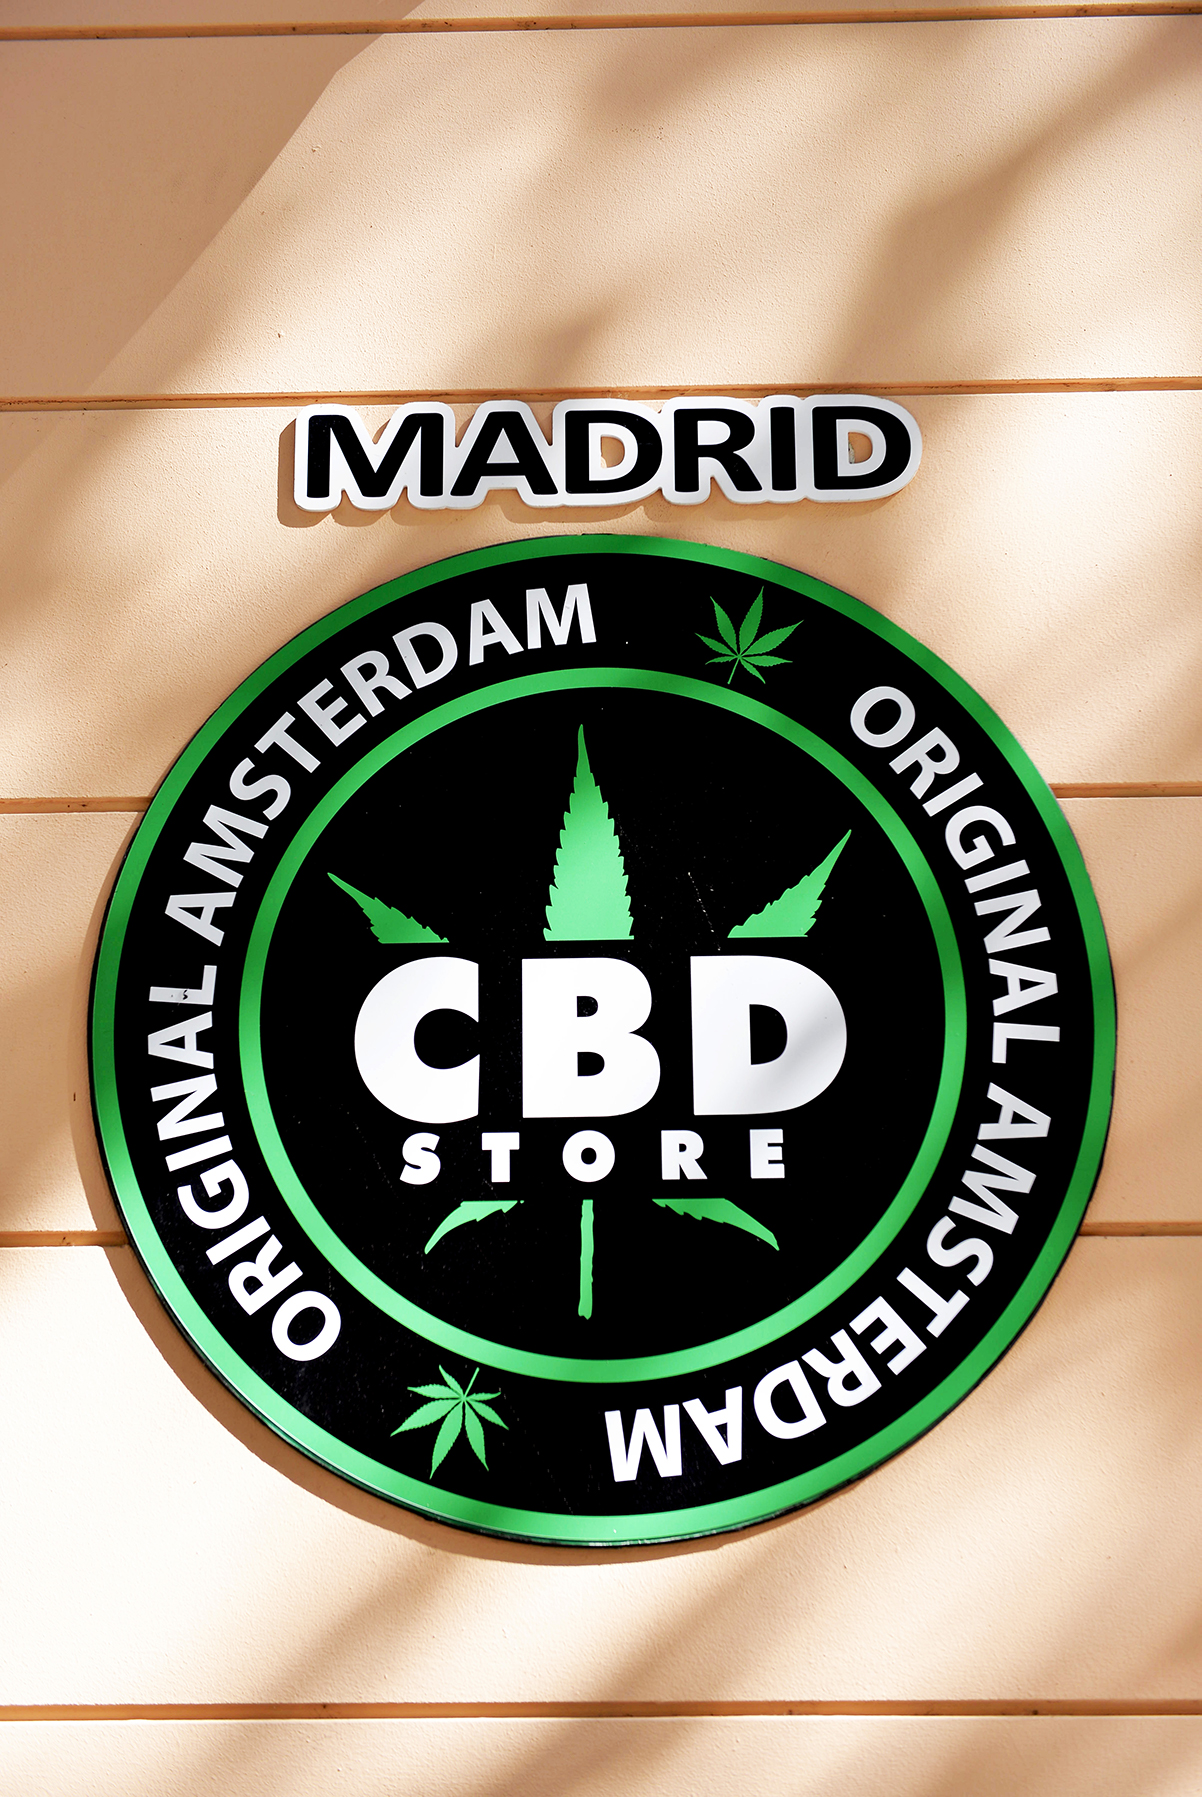 Tiendas de CBD: la doble paradoja del llamado cannabis legal 2